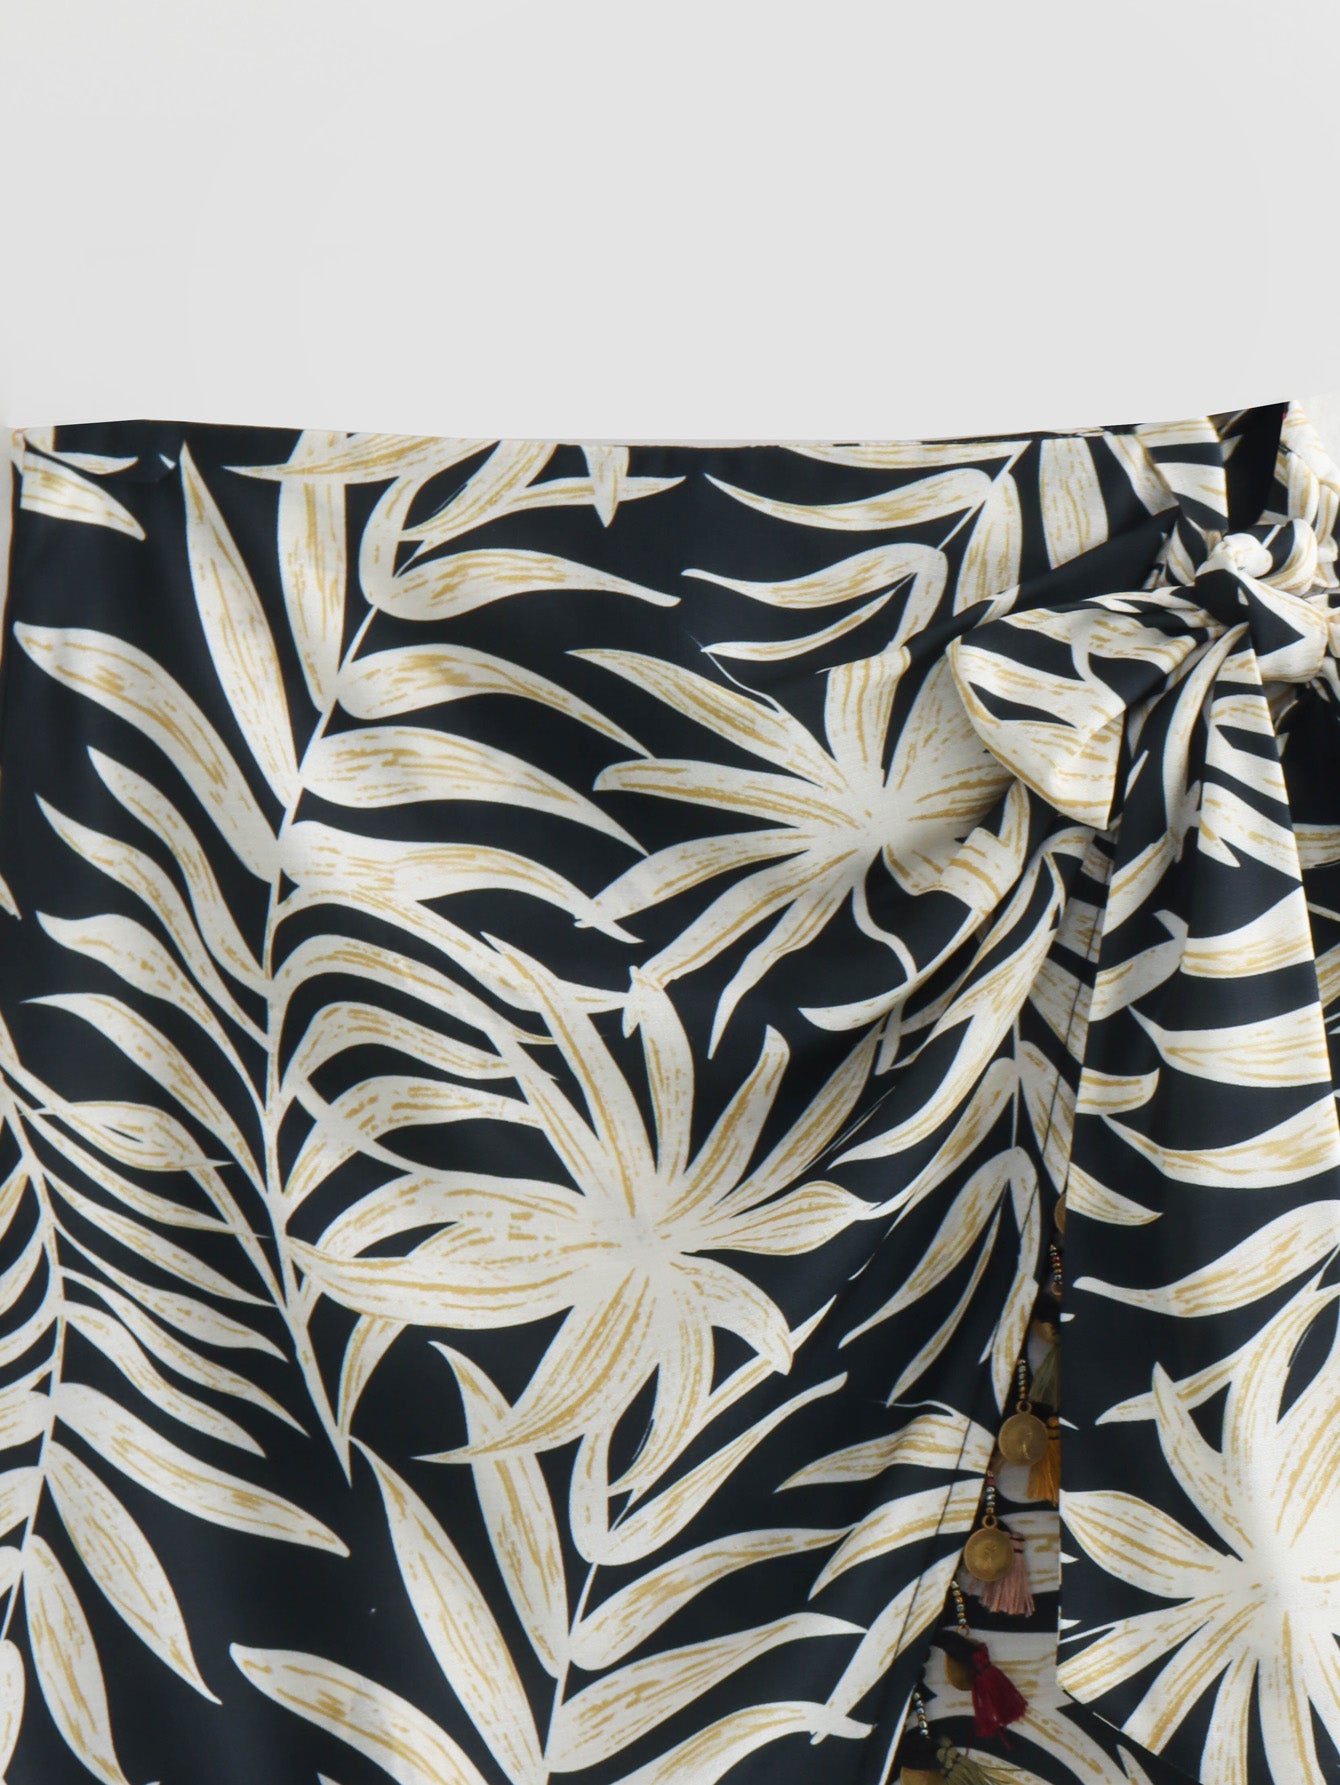 Printed Tassel Skirt for Women Slightly Mature Design